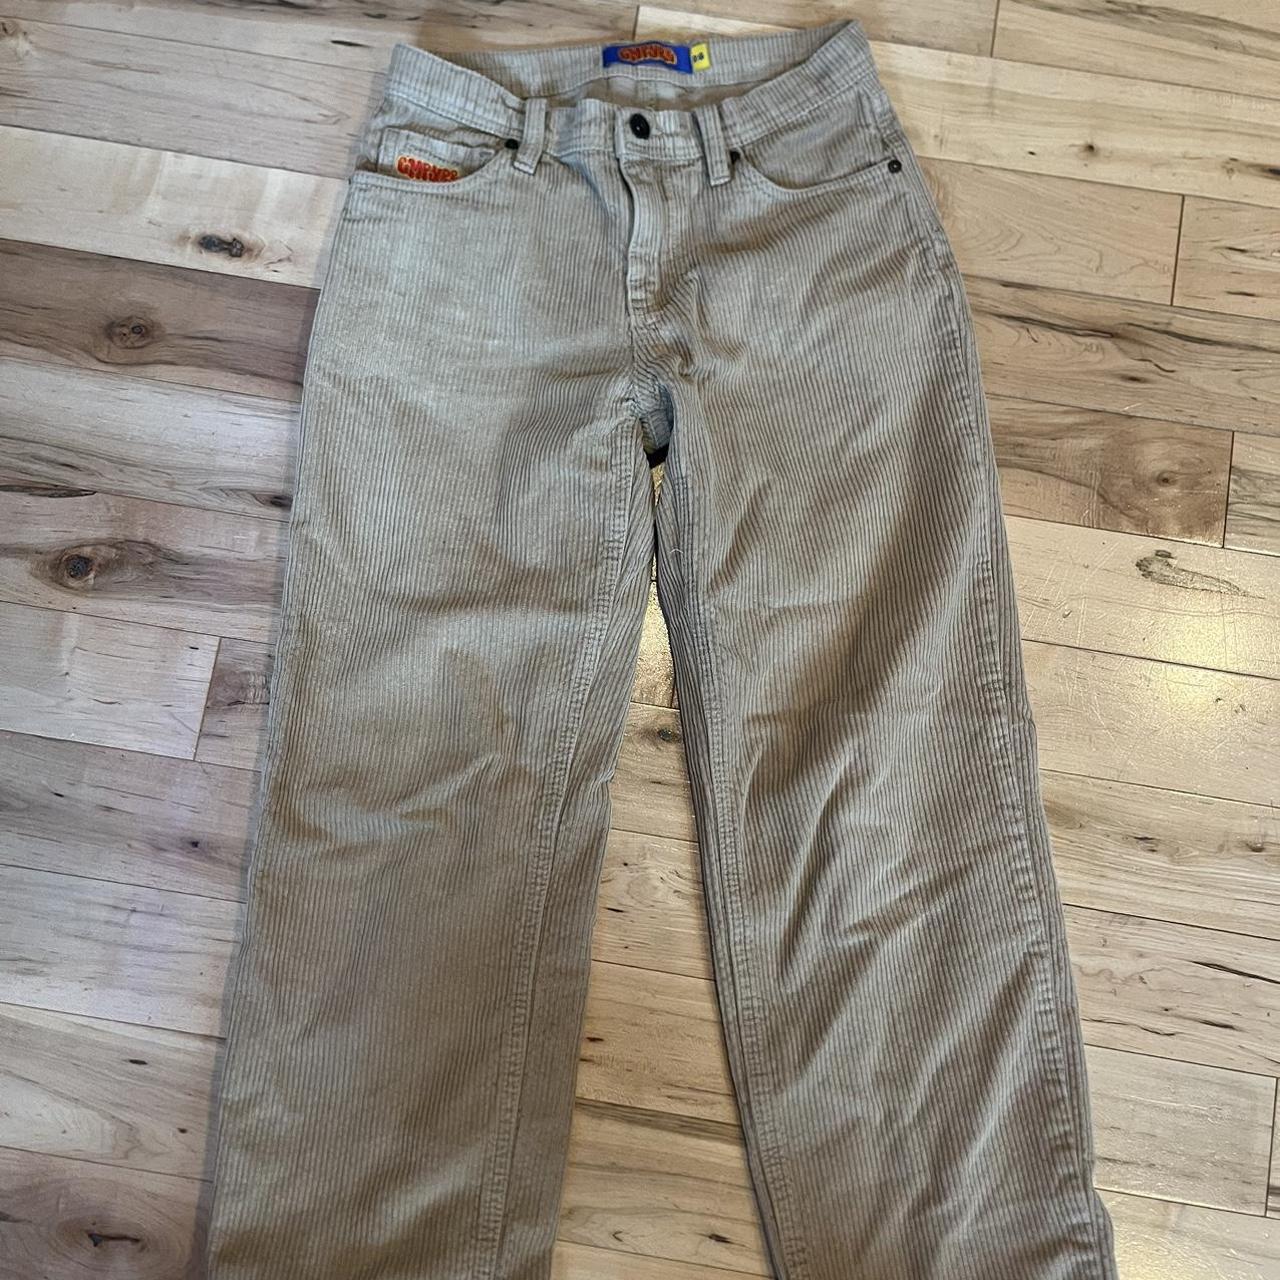 Empyre Baggy Jeans/Corduroy Pants 25$ PER PANT... - Depop